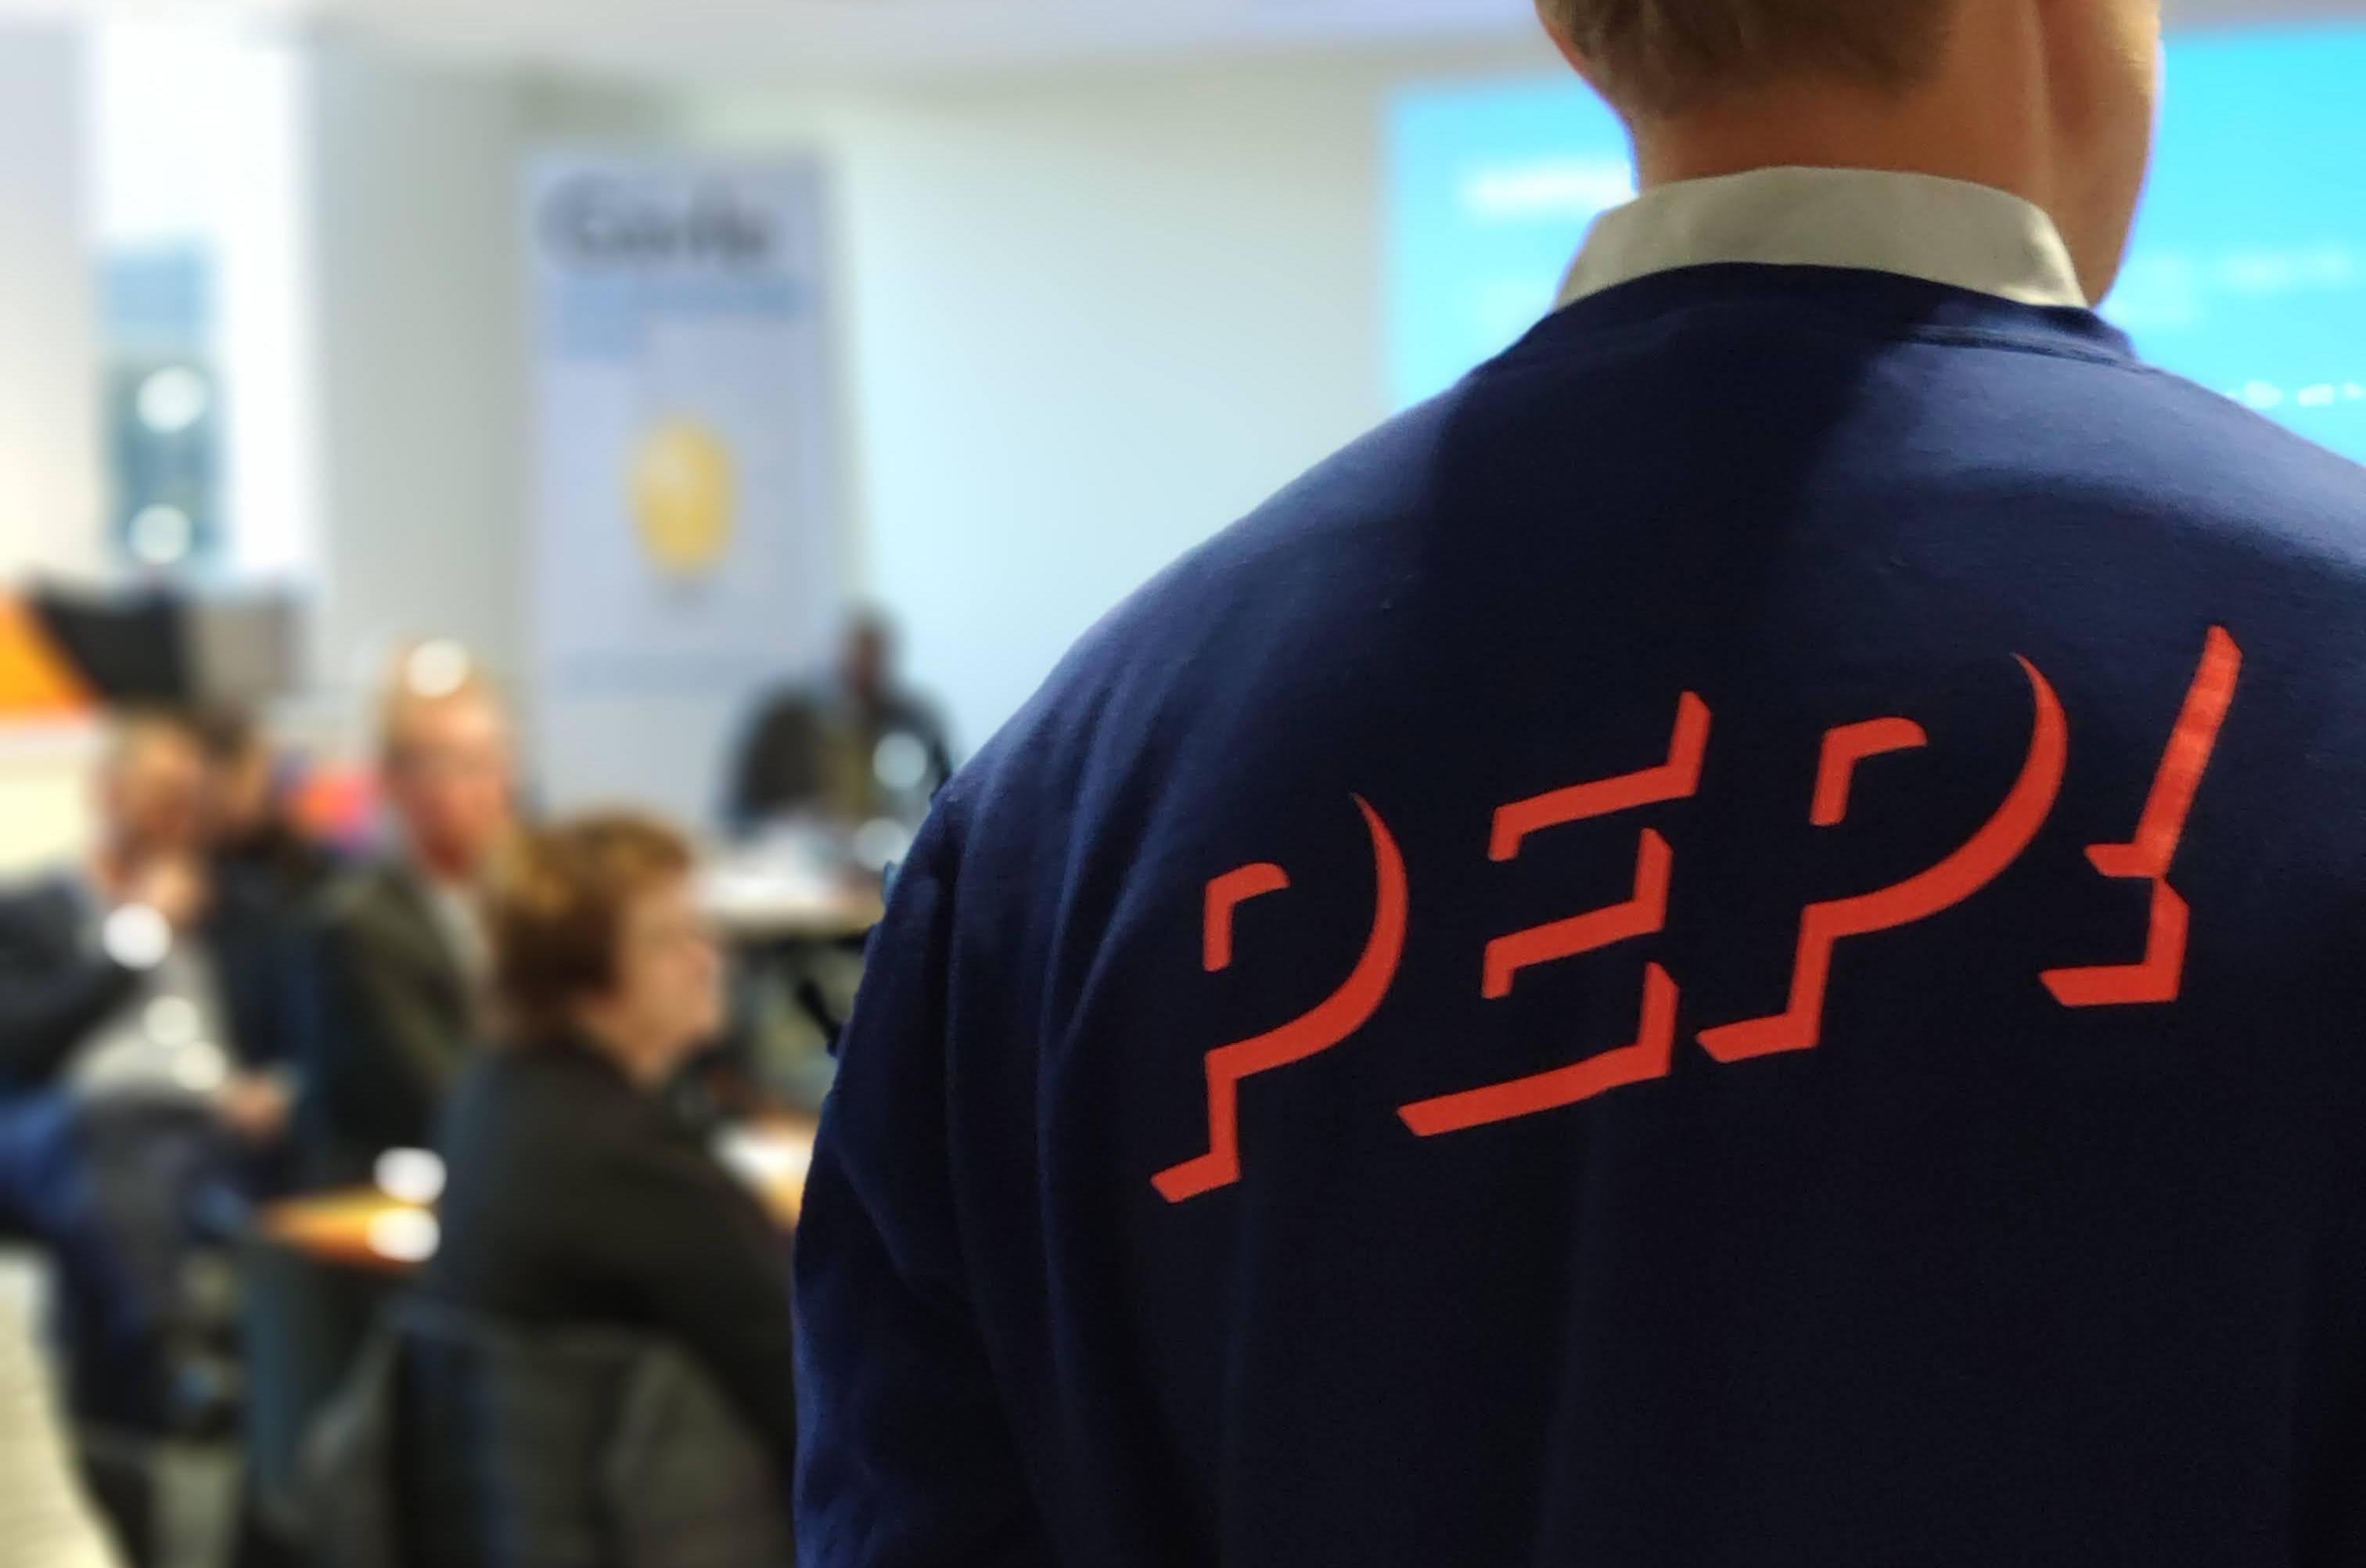 Man med en tröja med texten "PEP!" på ryggen.